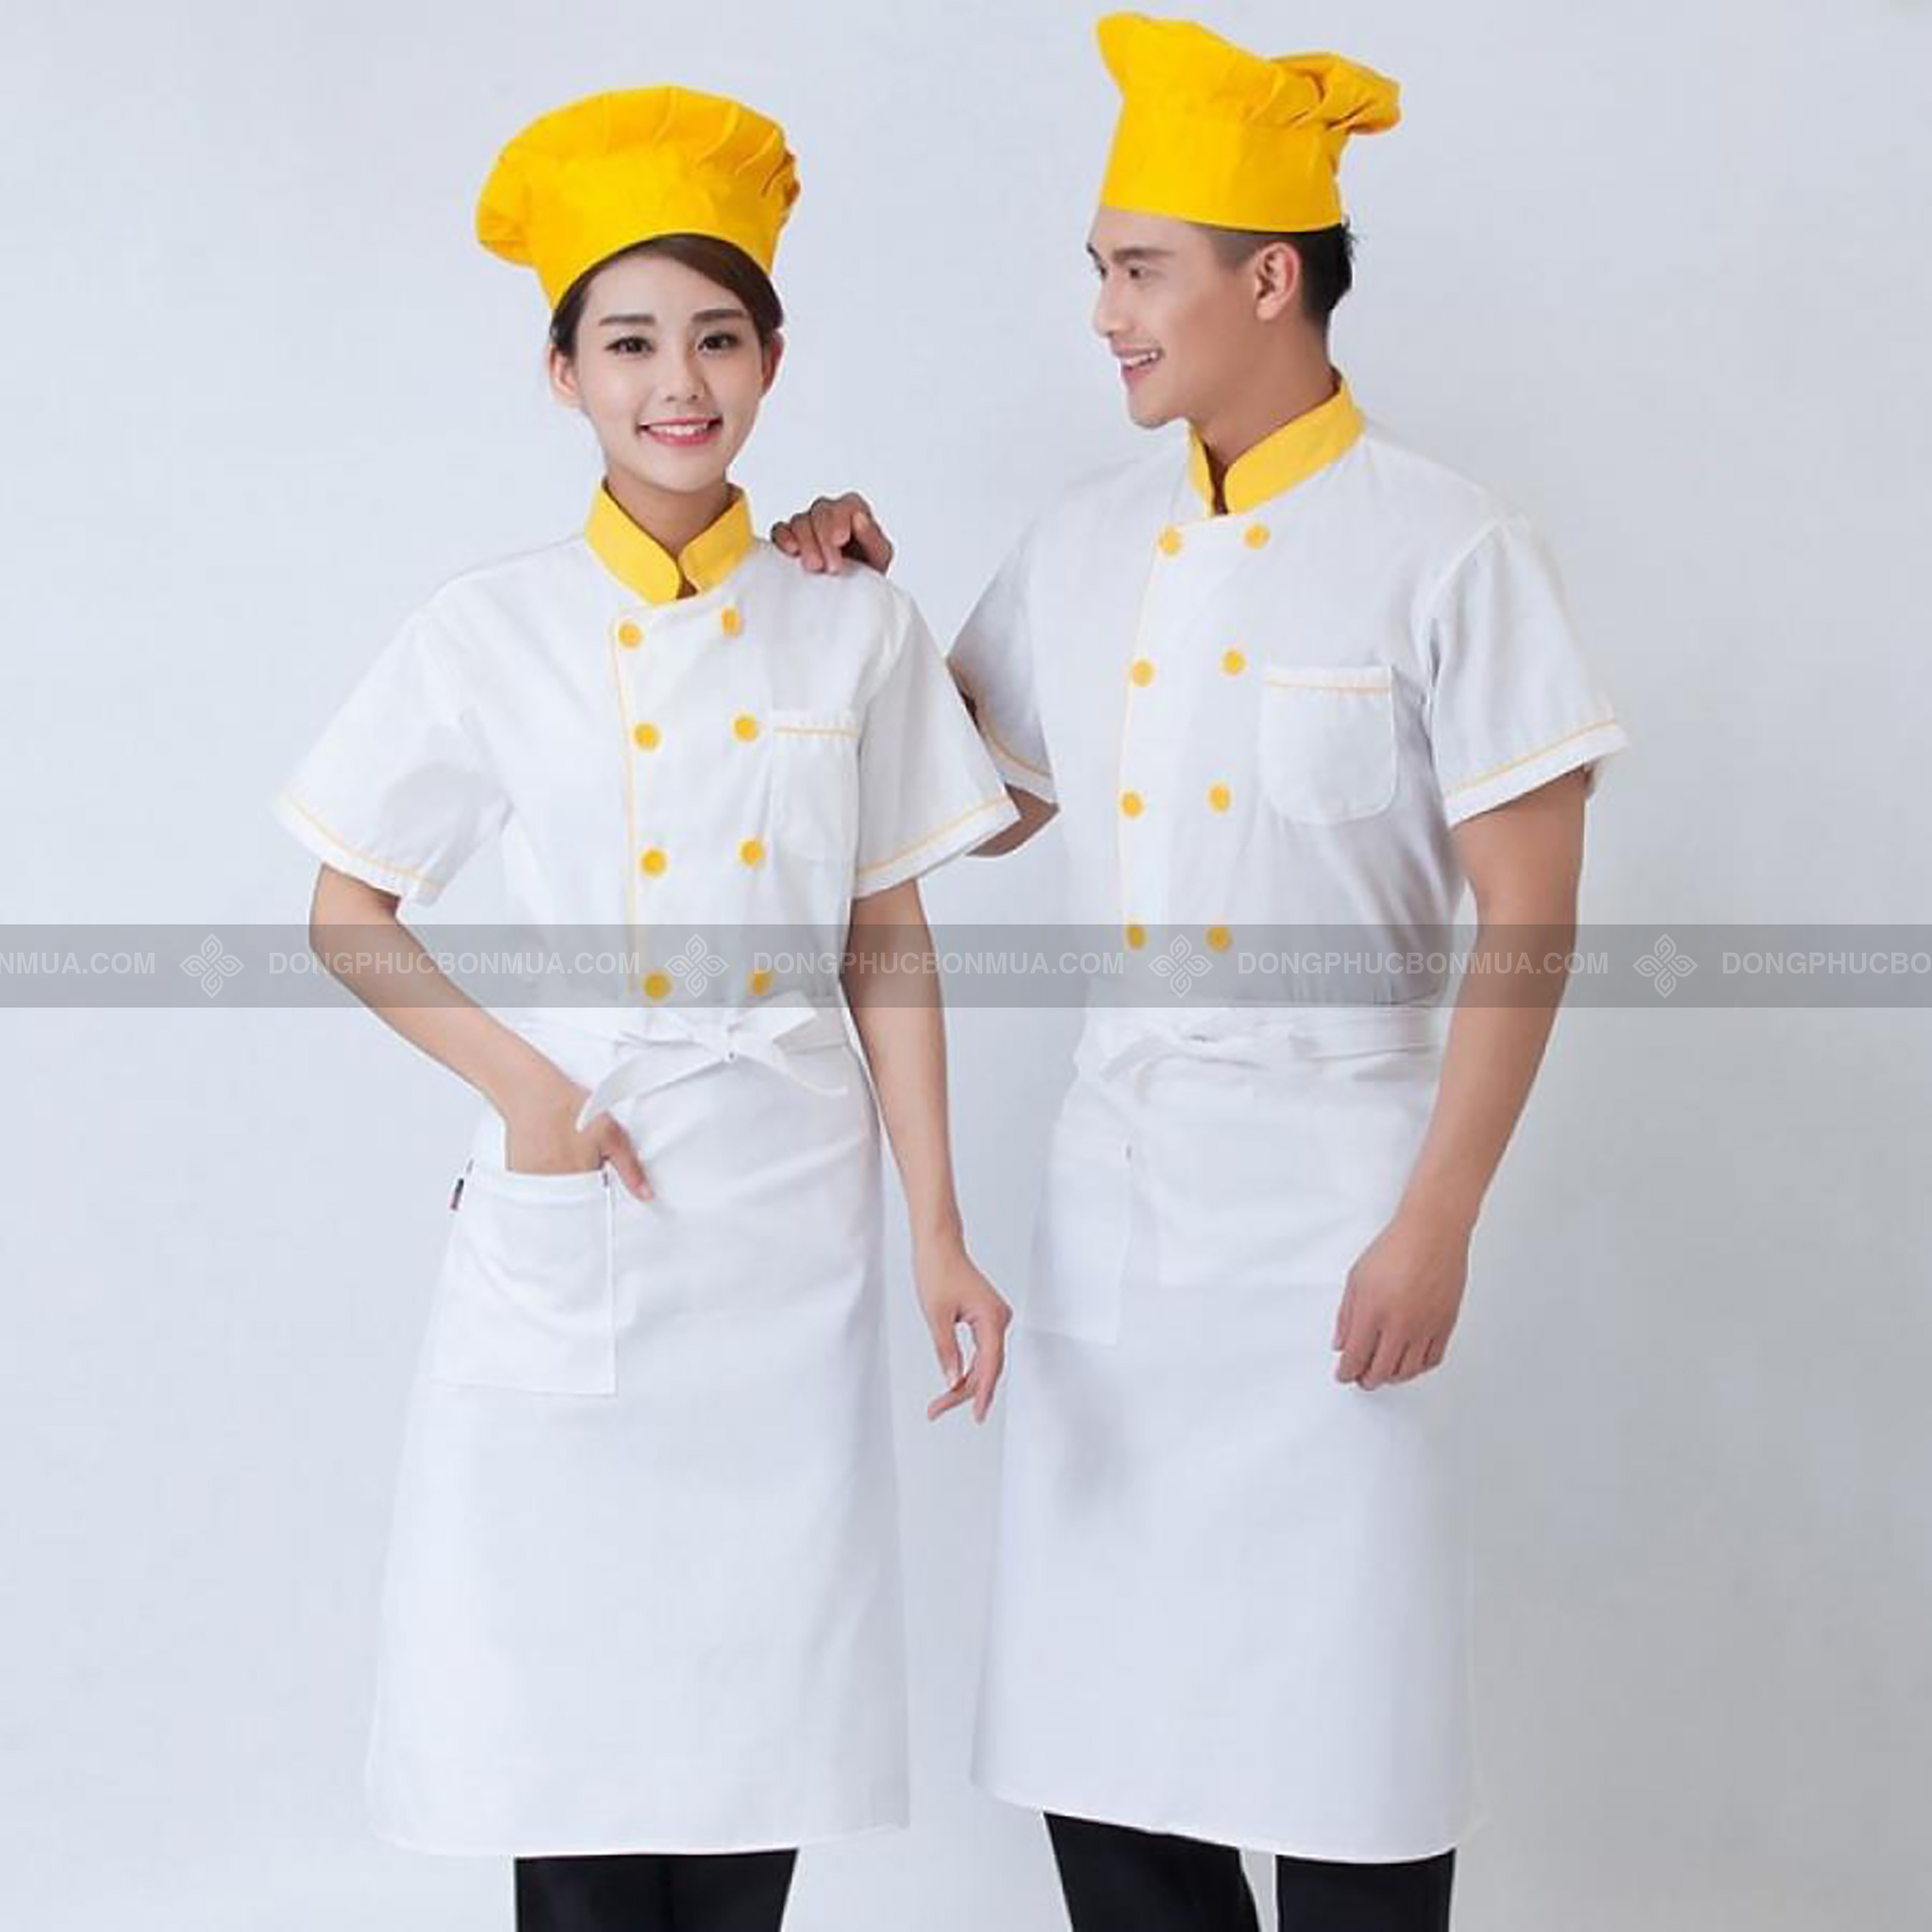 màu sắc đồng phục nhà hàng